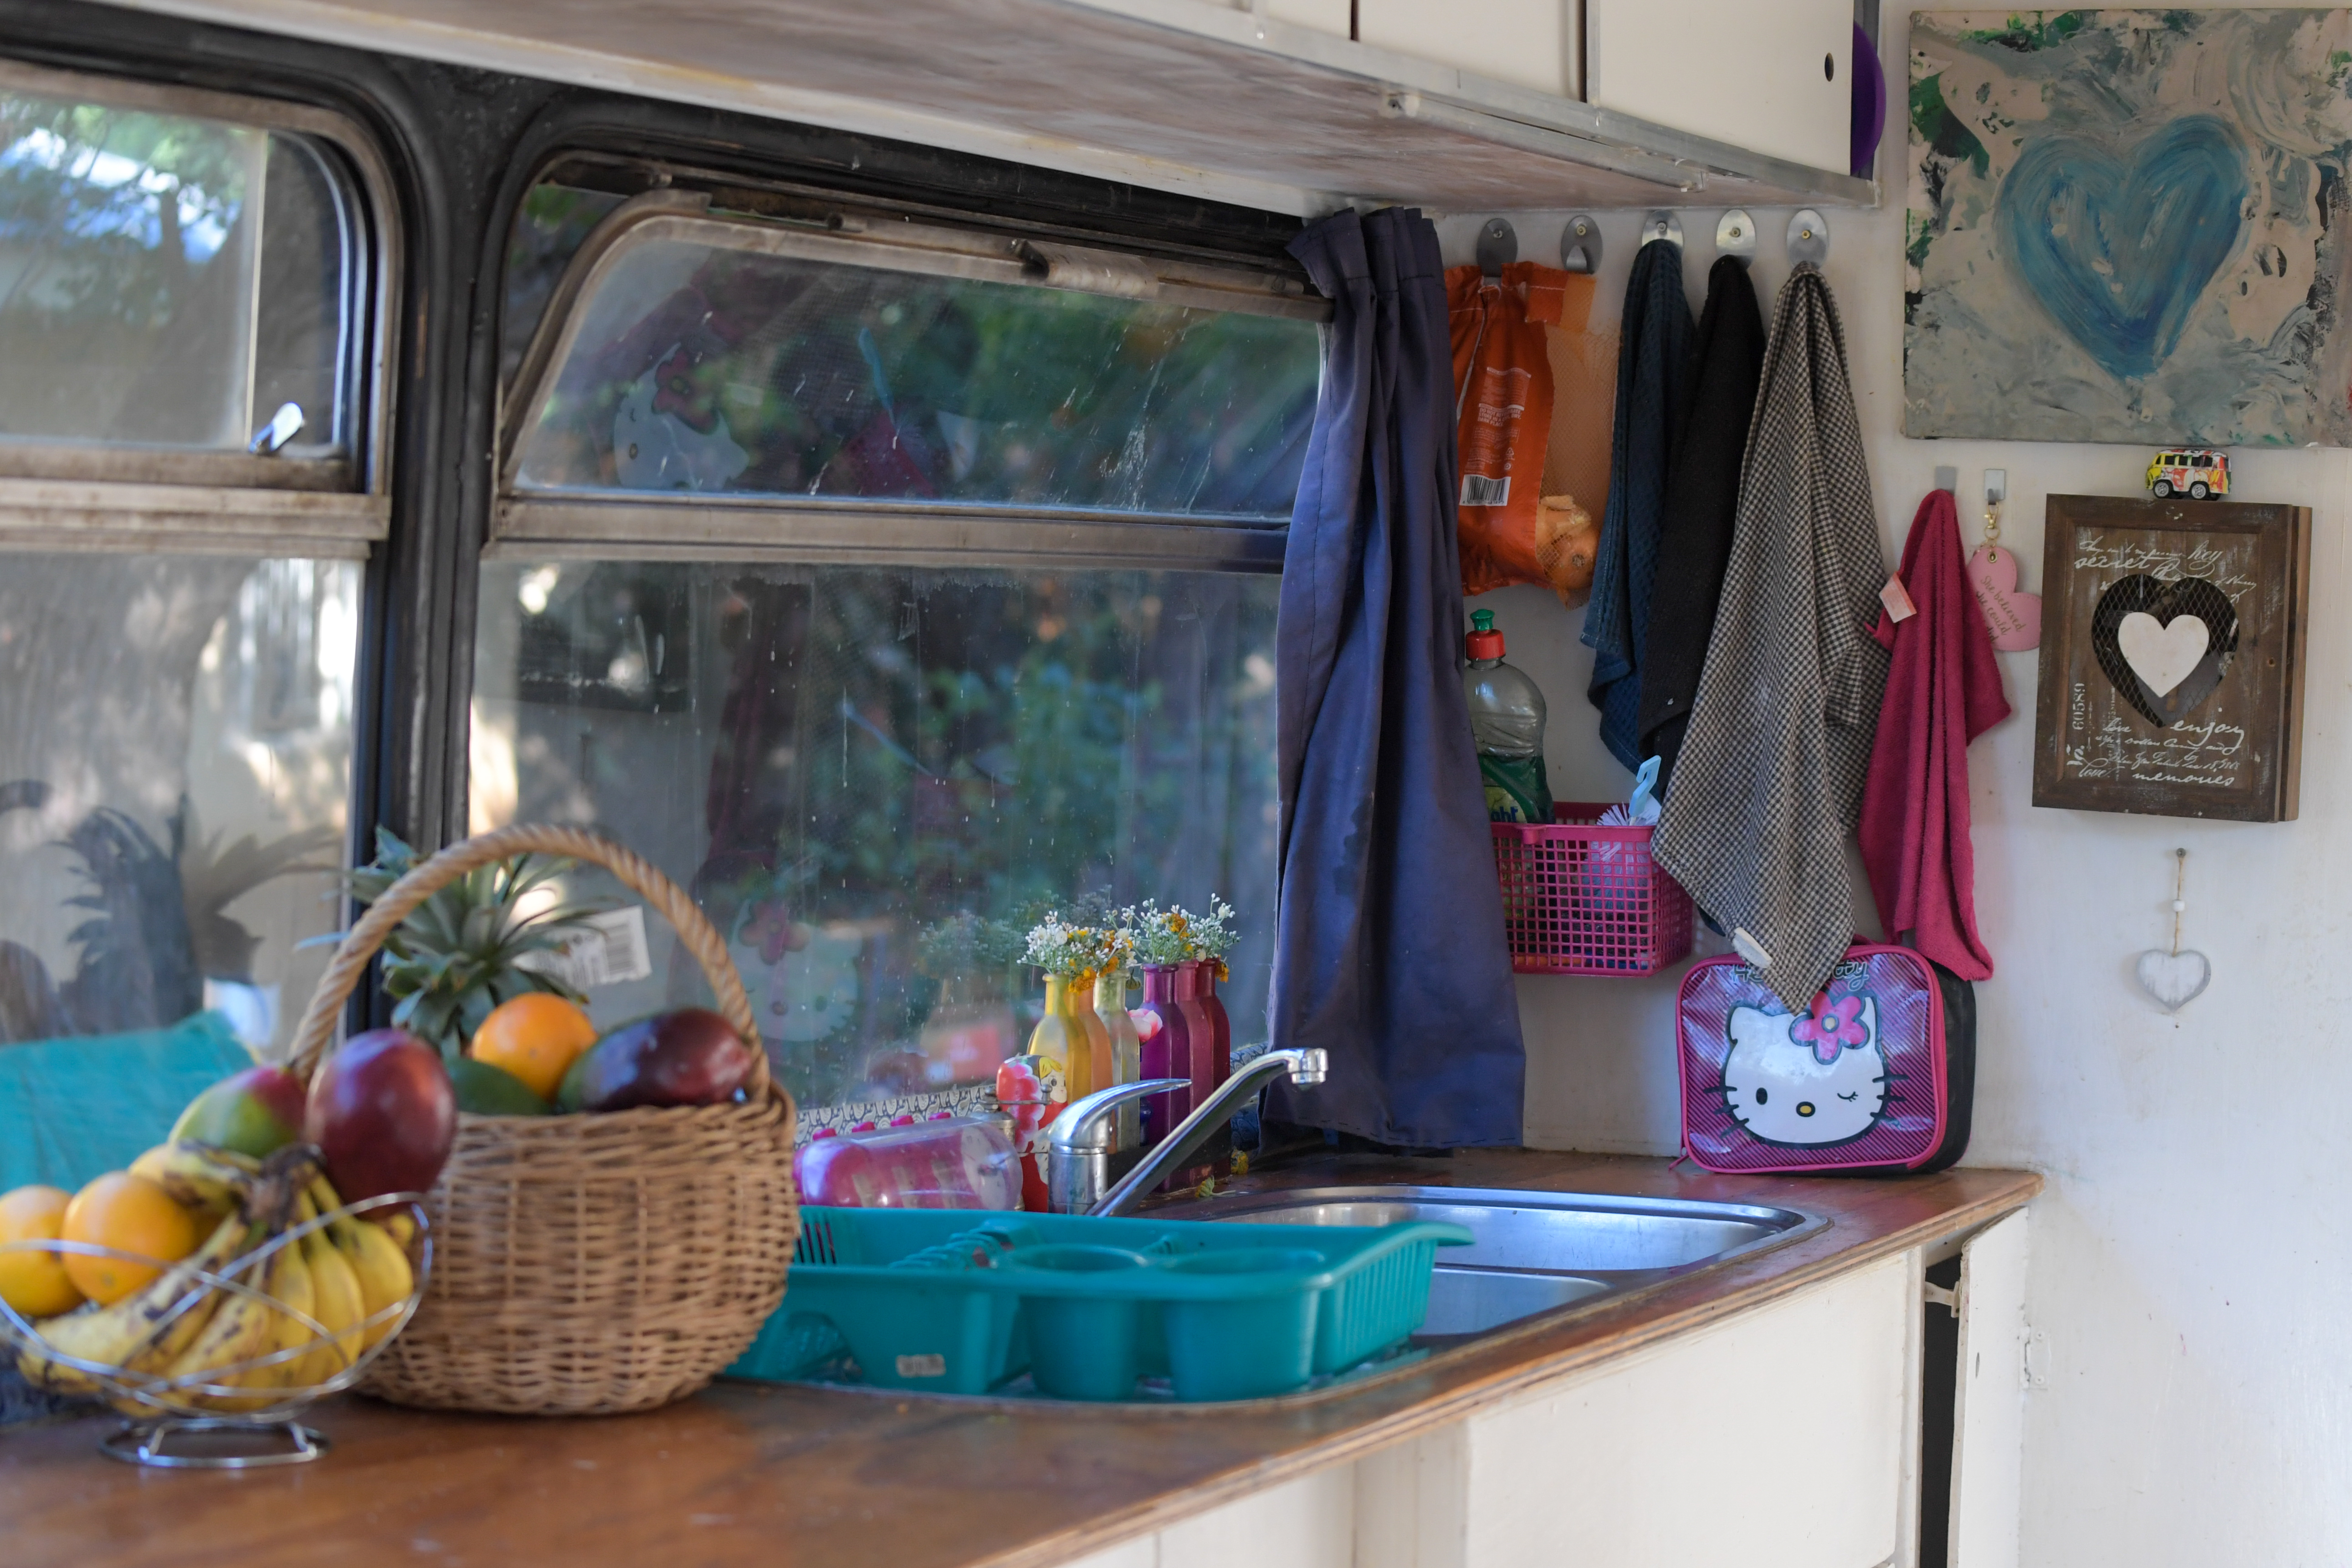 The kitchen area on the Van Niekerk bus. Van life